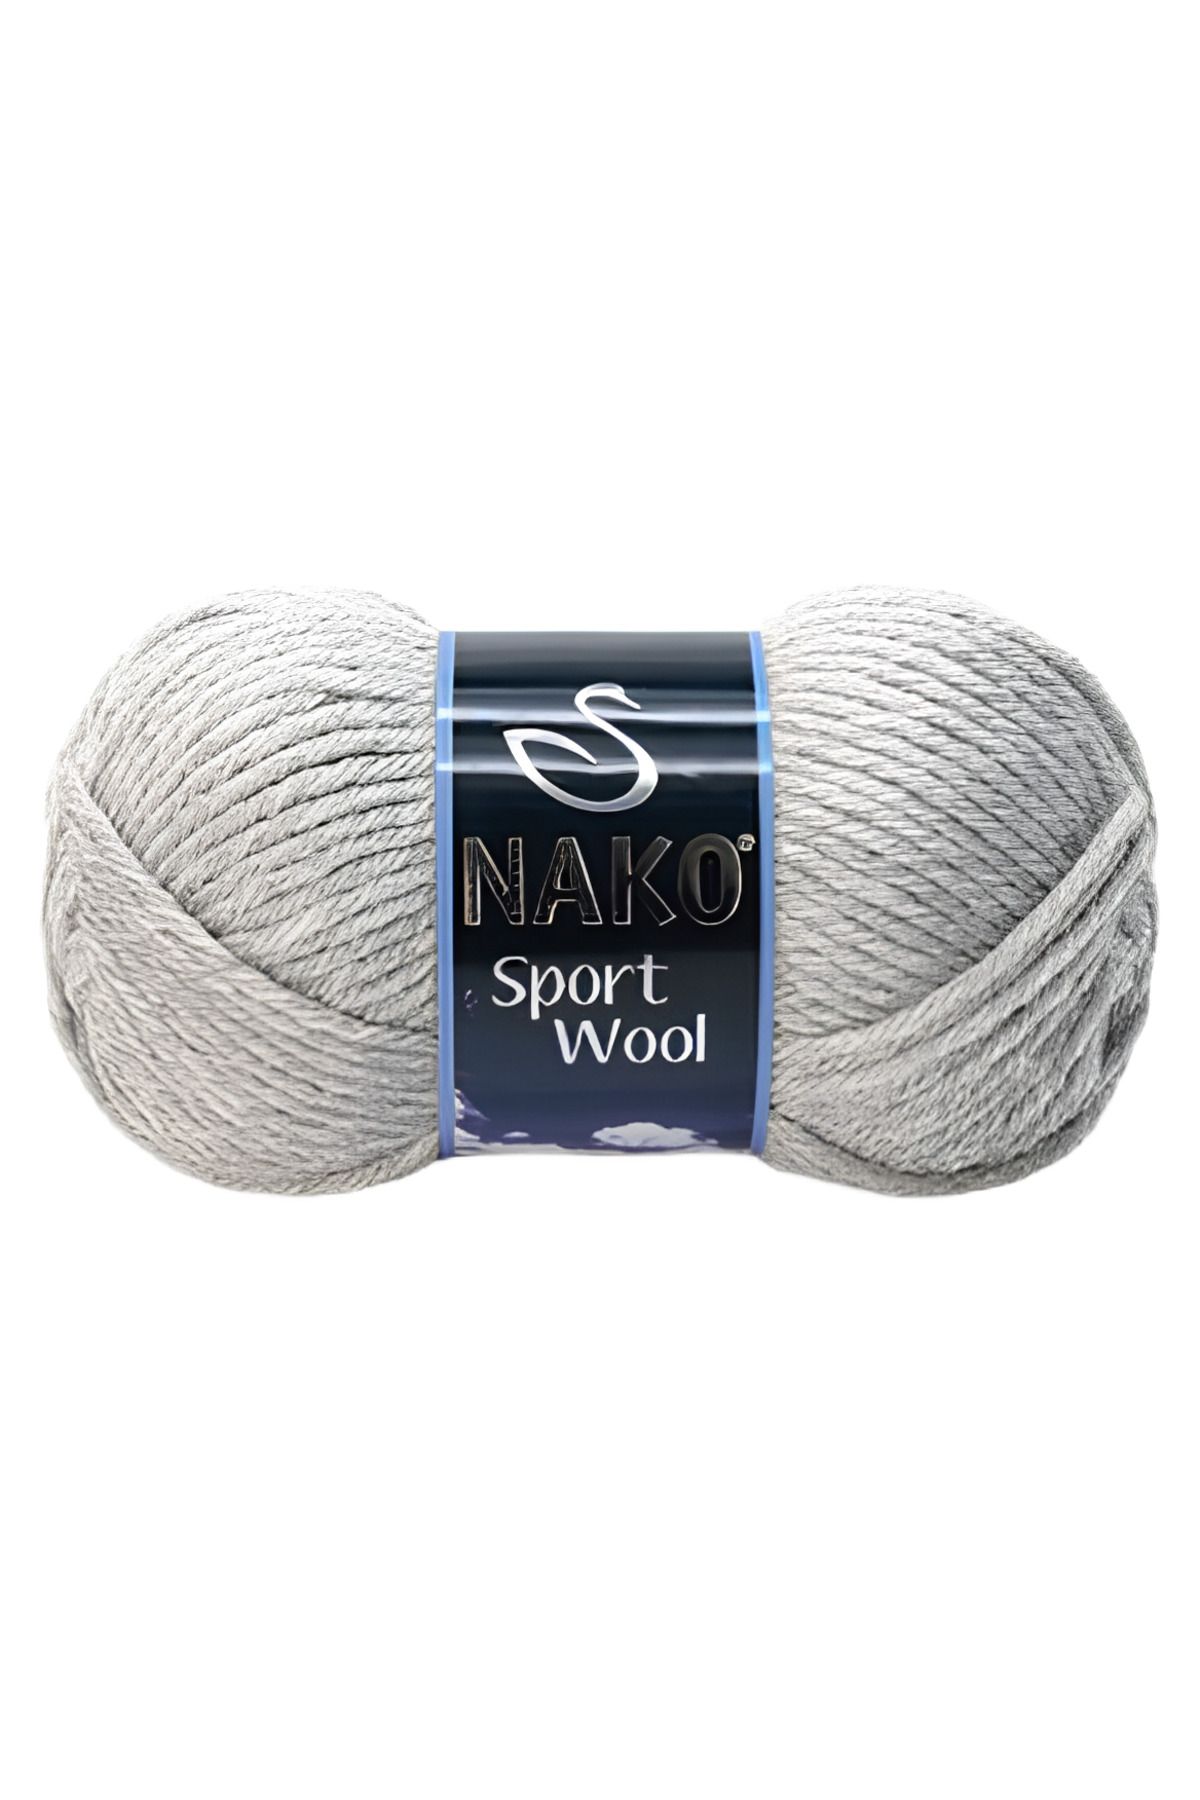 Nako Sport Wool Örgü Ipi 100 Gr. 195